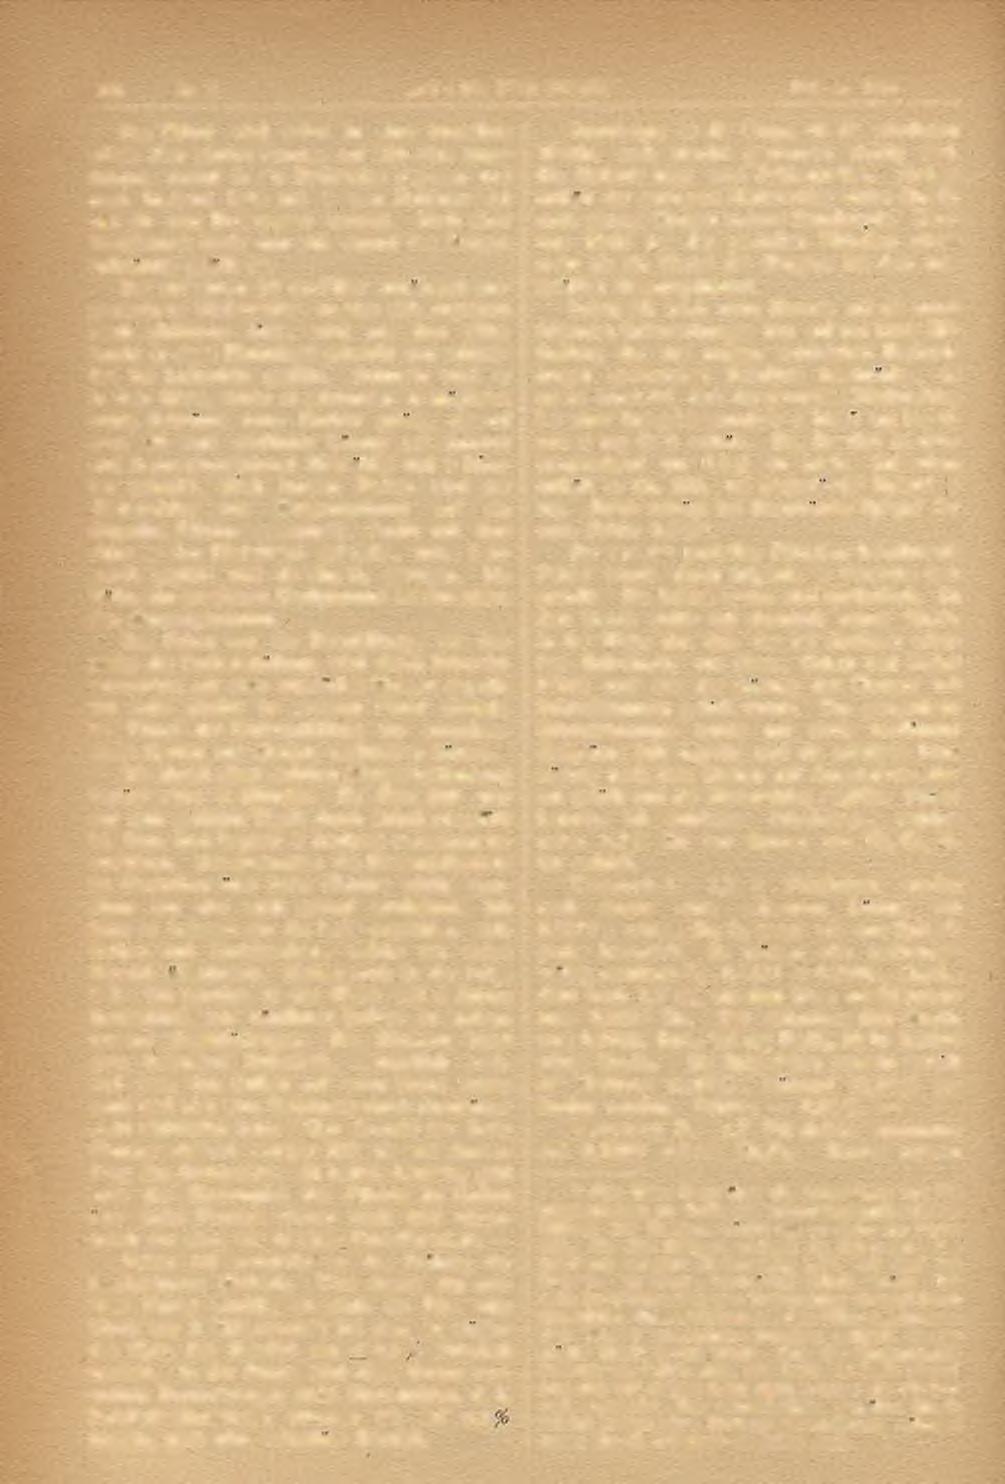 100 Nr. 2. STAHL UND EISEN.' Februar 1886.